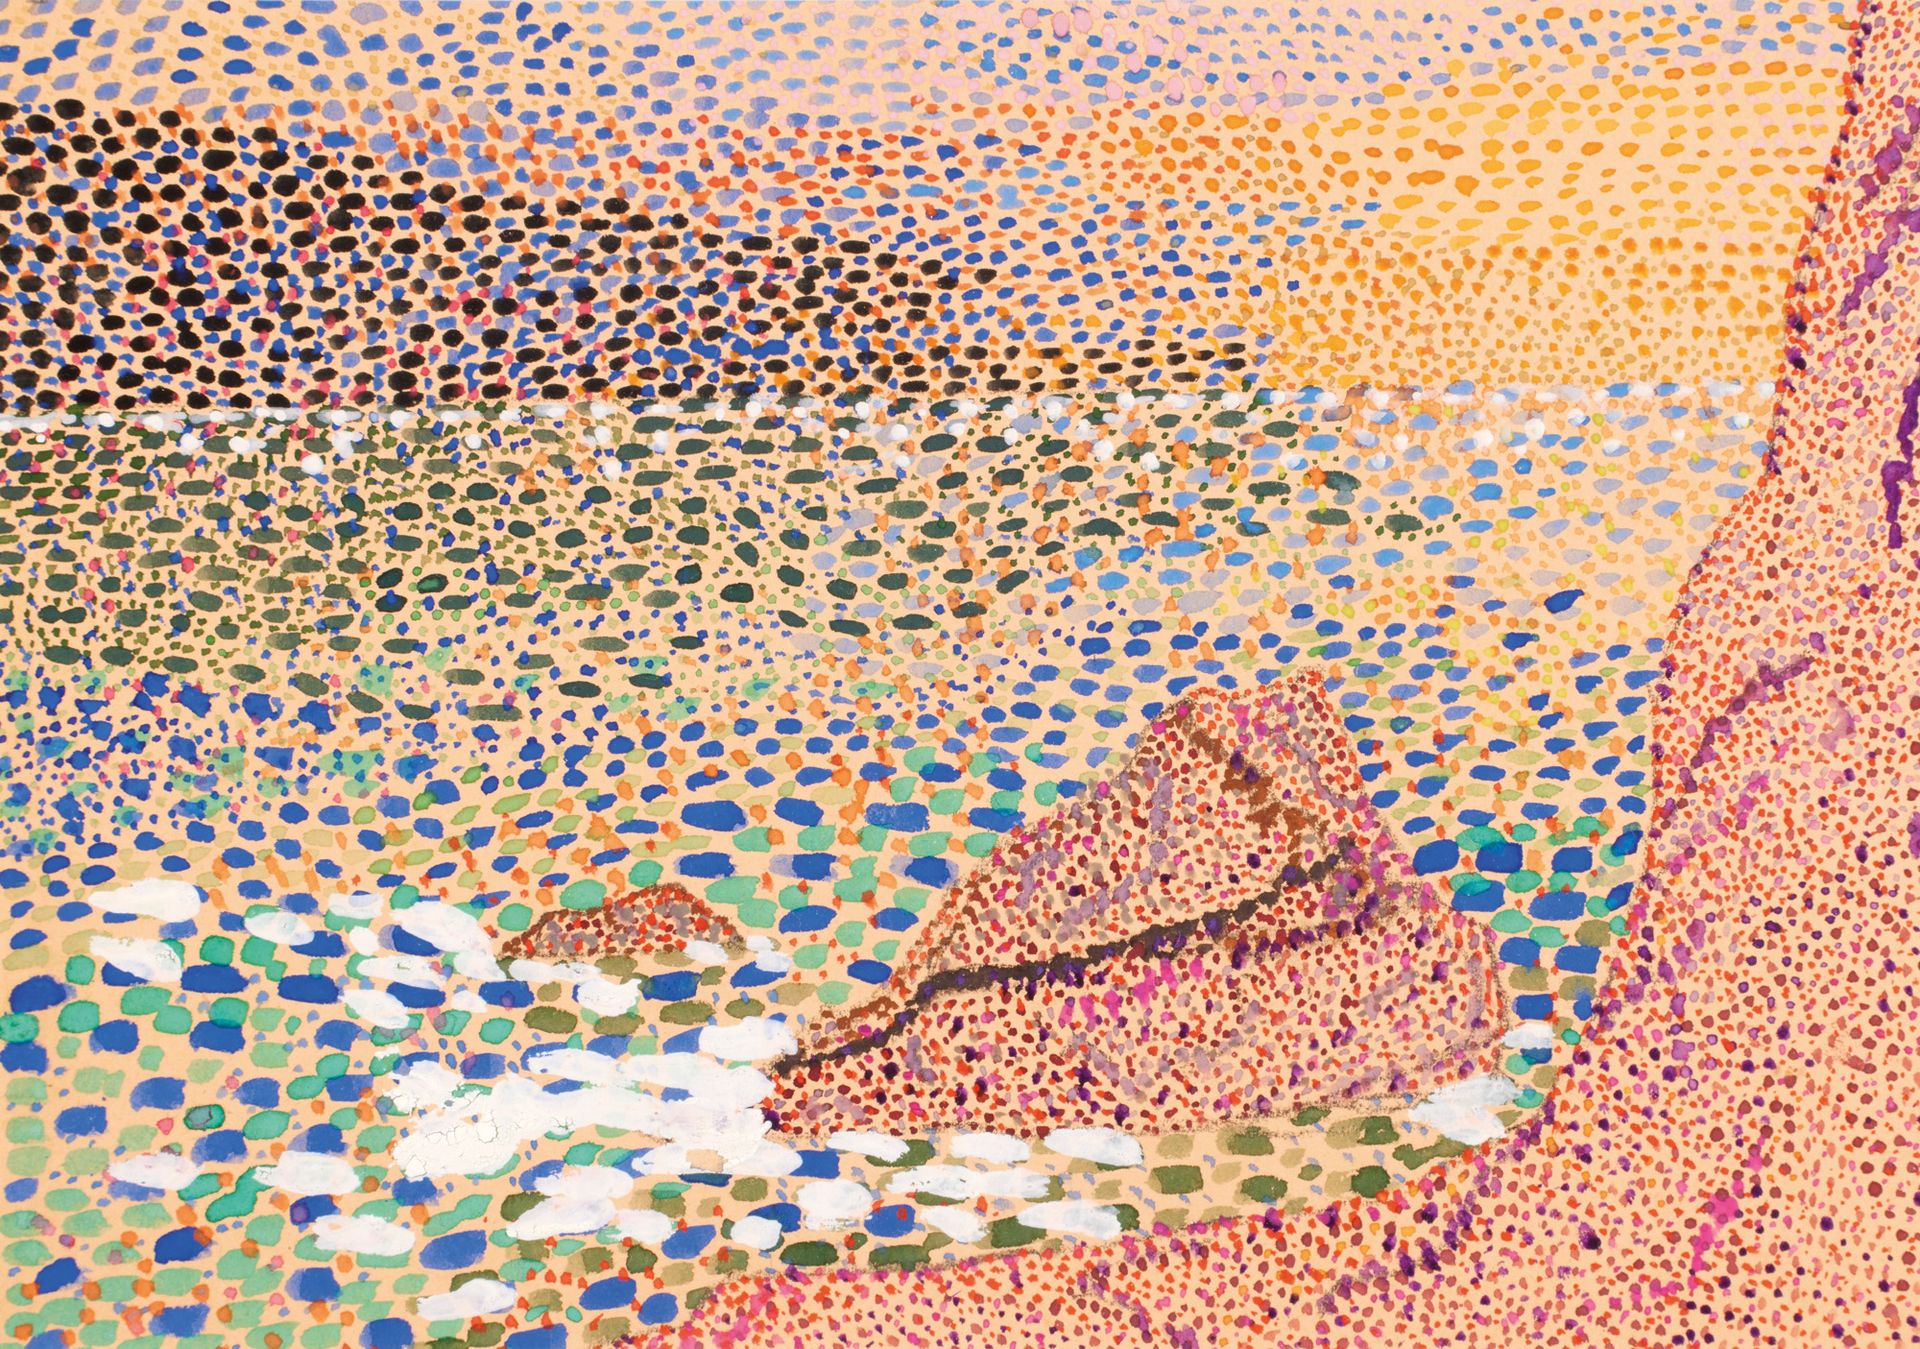 École pointilliste XXème siècle Scuola divisionista 20° secolo

Surf sulle rocce&hellip;